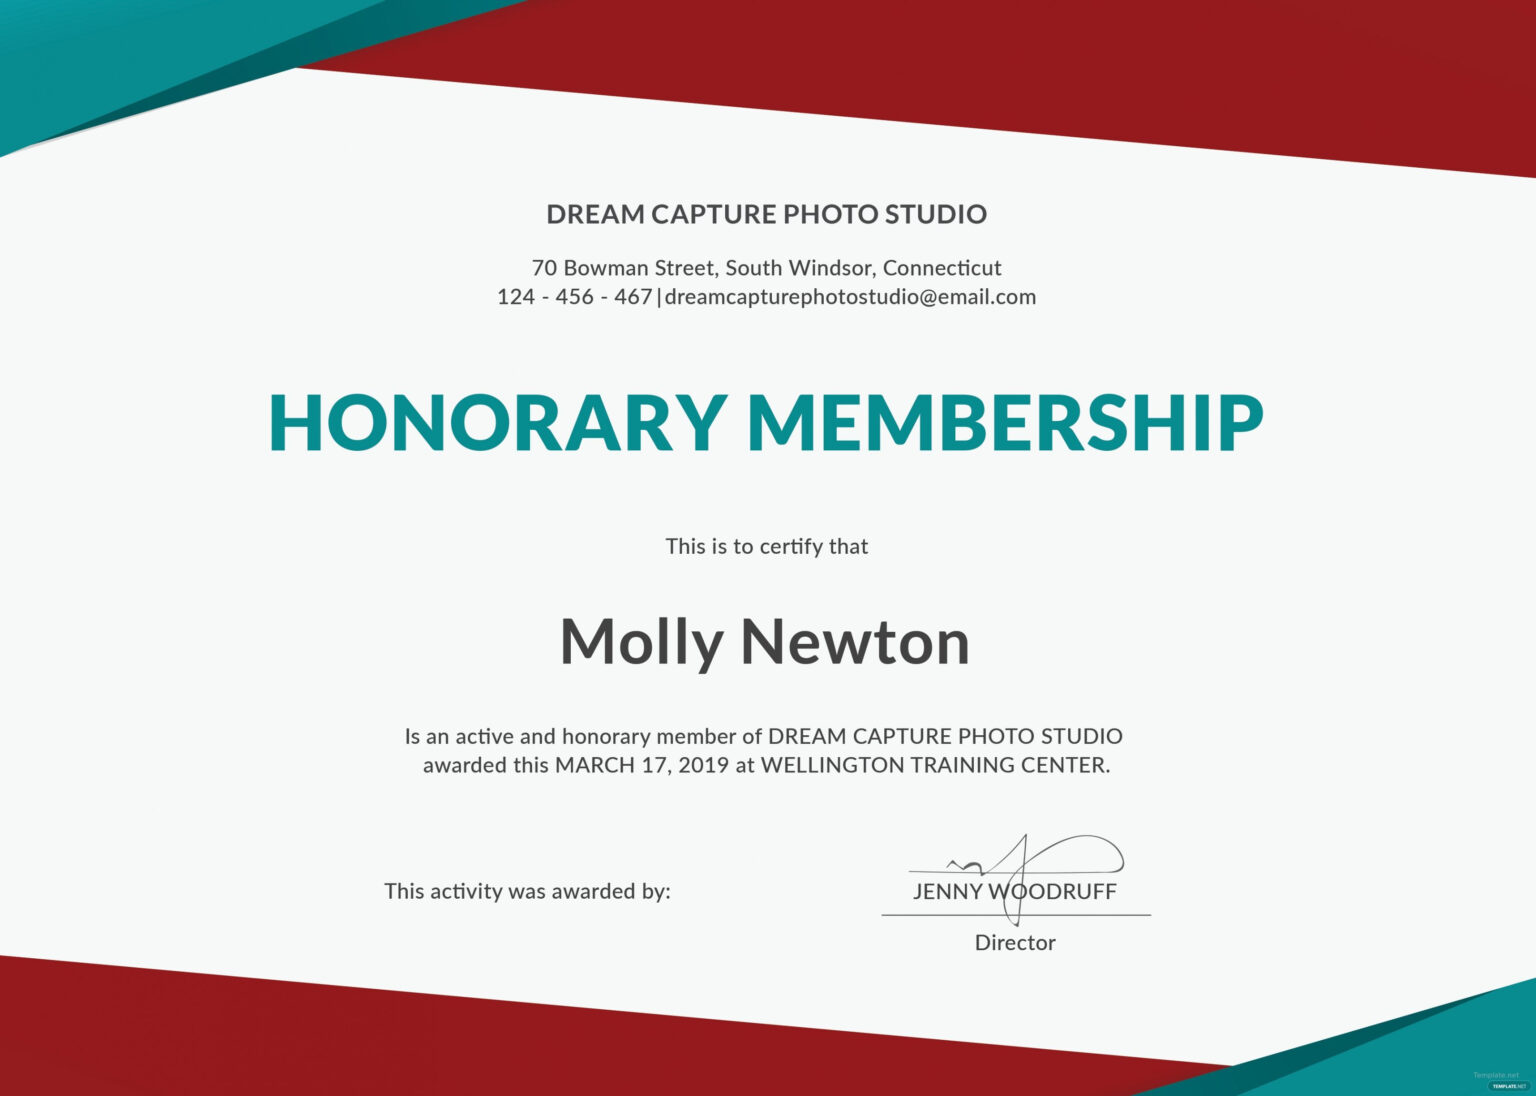 New Member Certificate Template